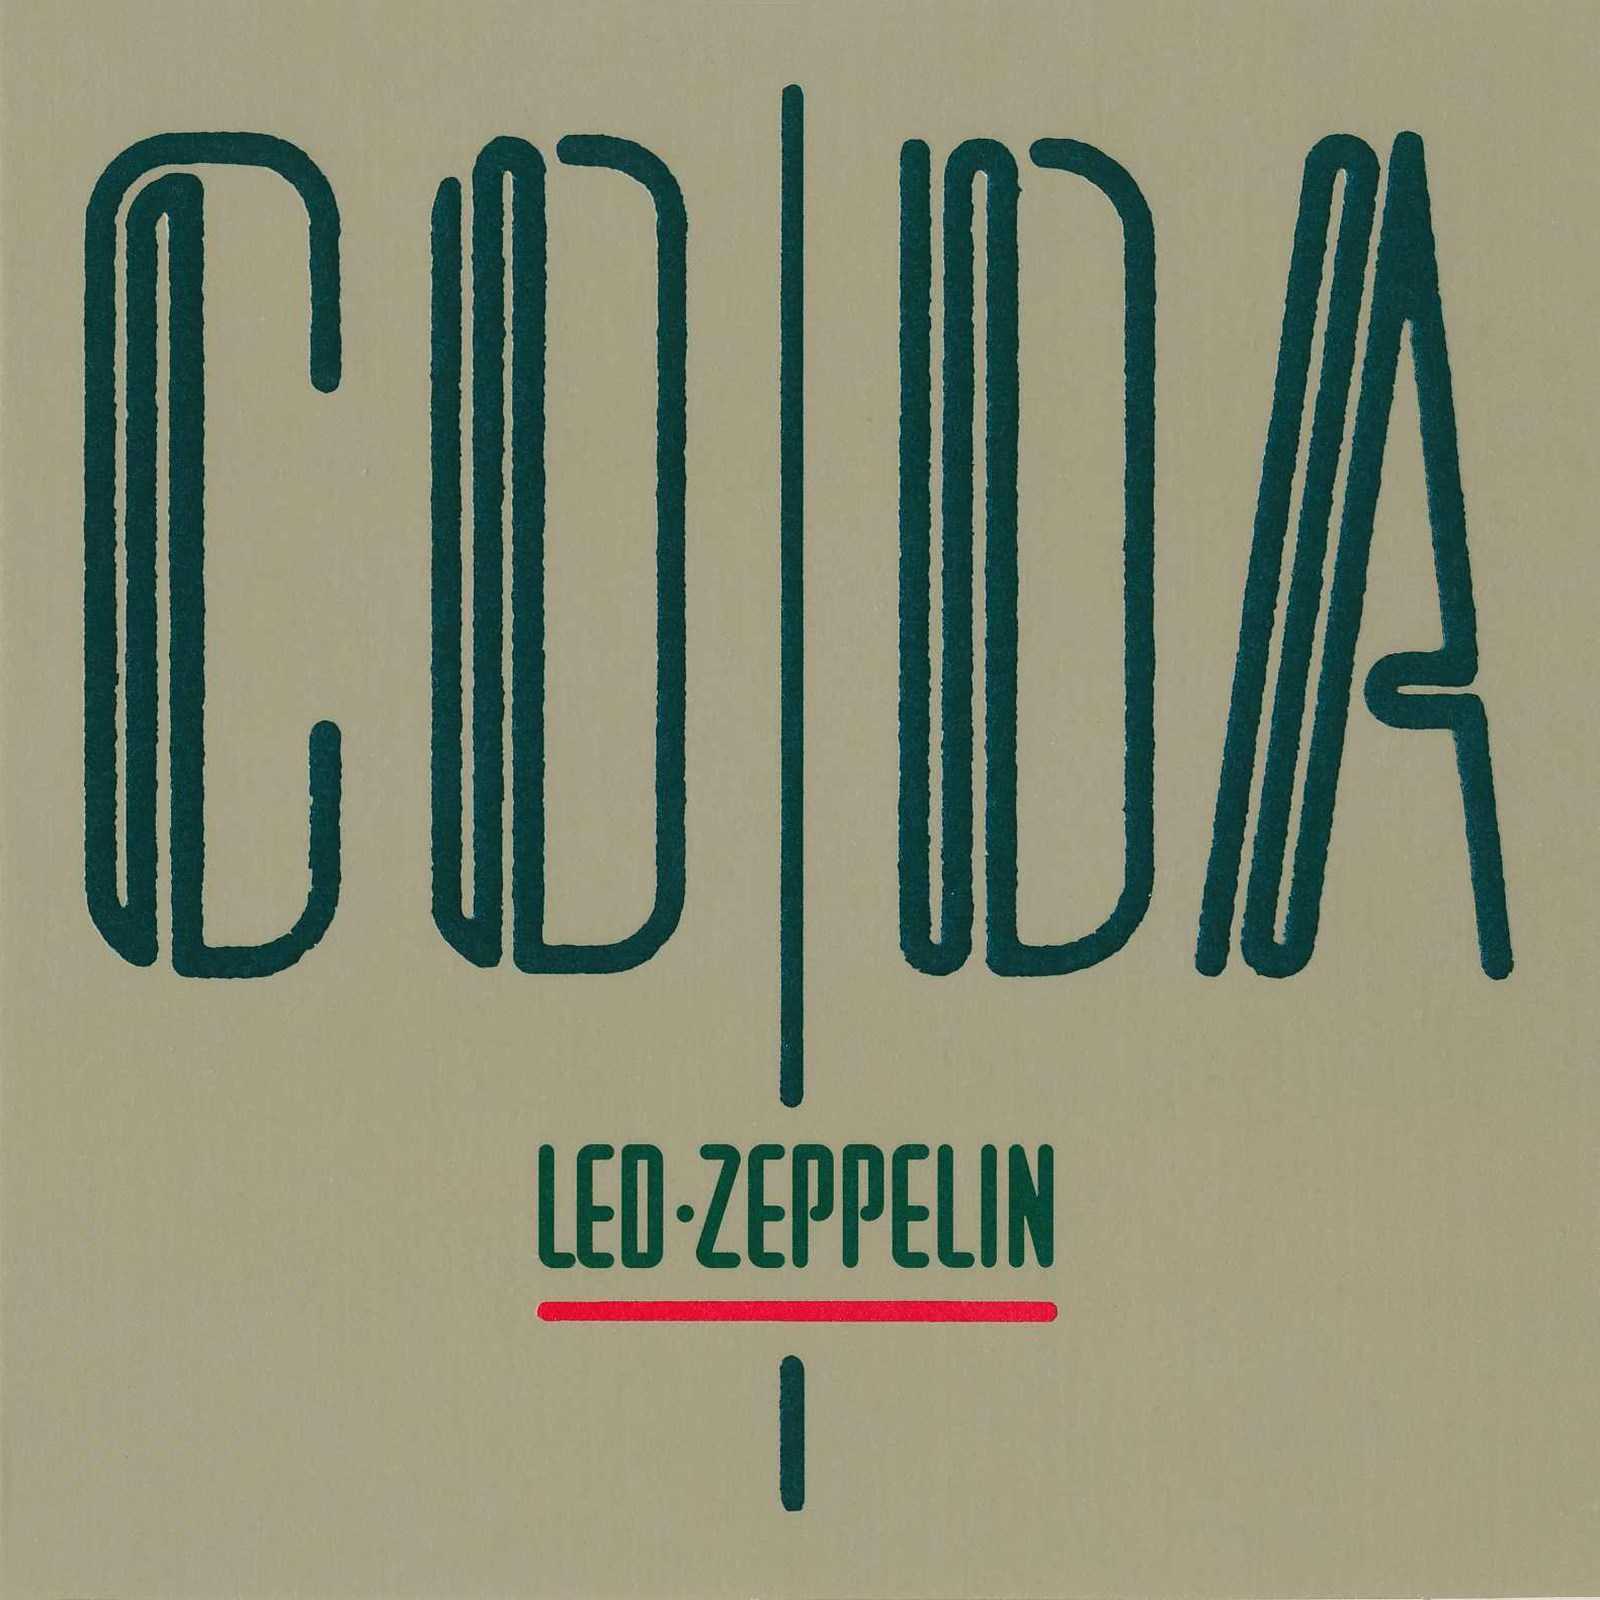 Coda (альбом led zeppelin) - вики